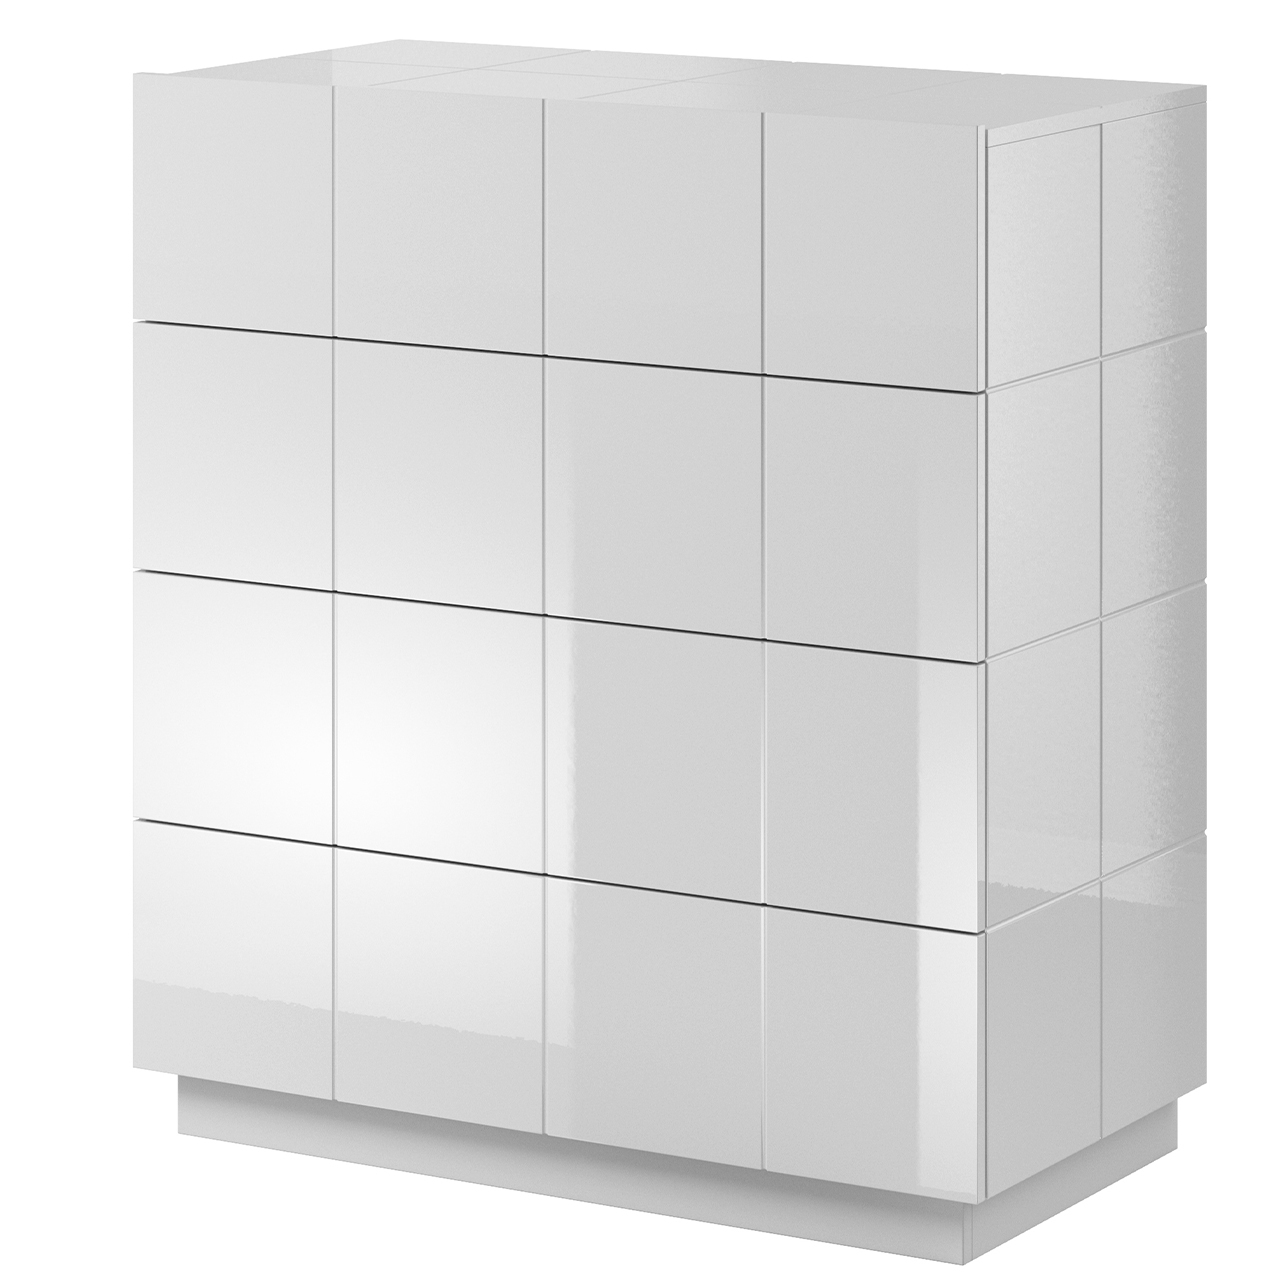 Storage cabinet REJA 4S white gloss